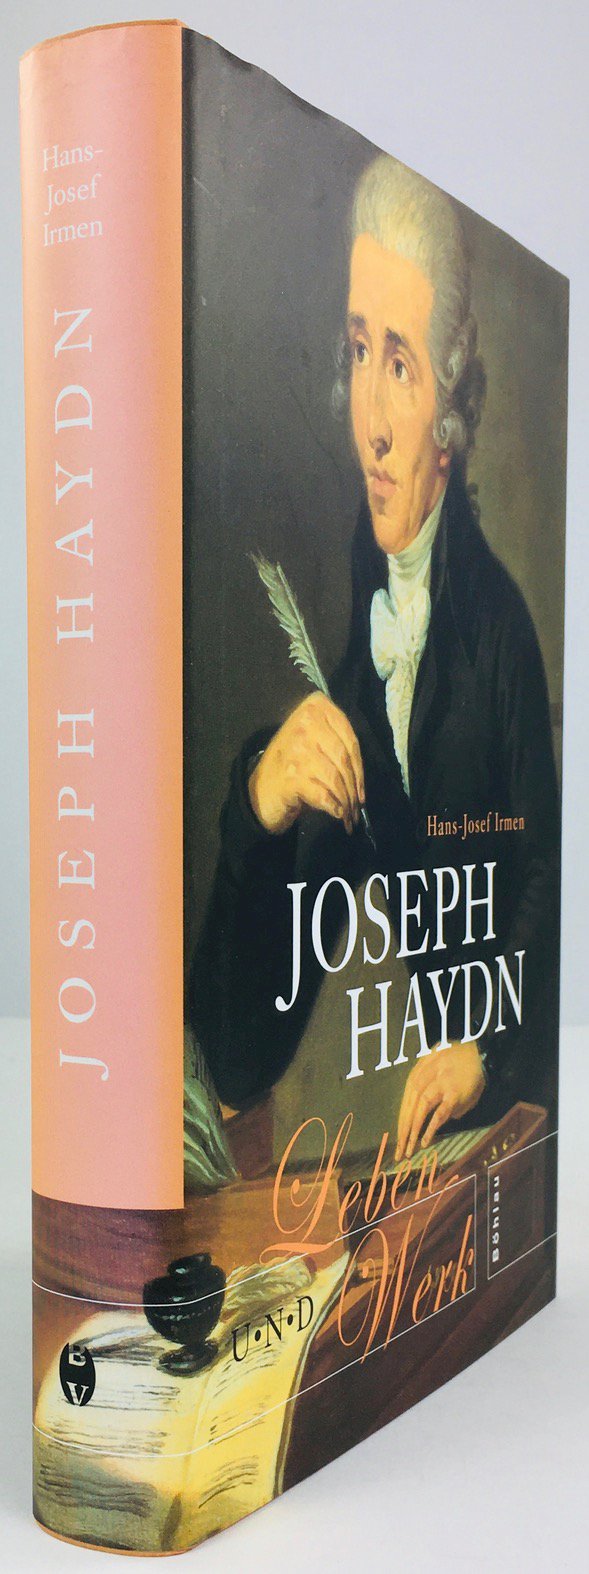 Abbildung von "Joseph Haydn. Leben und Werk."